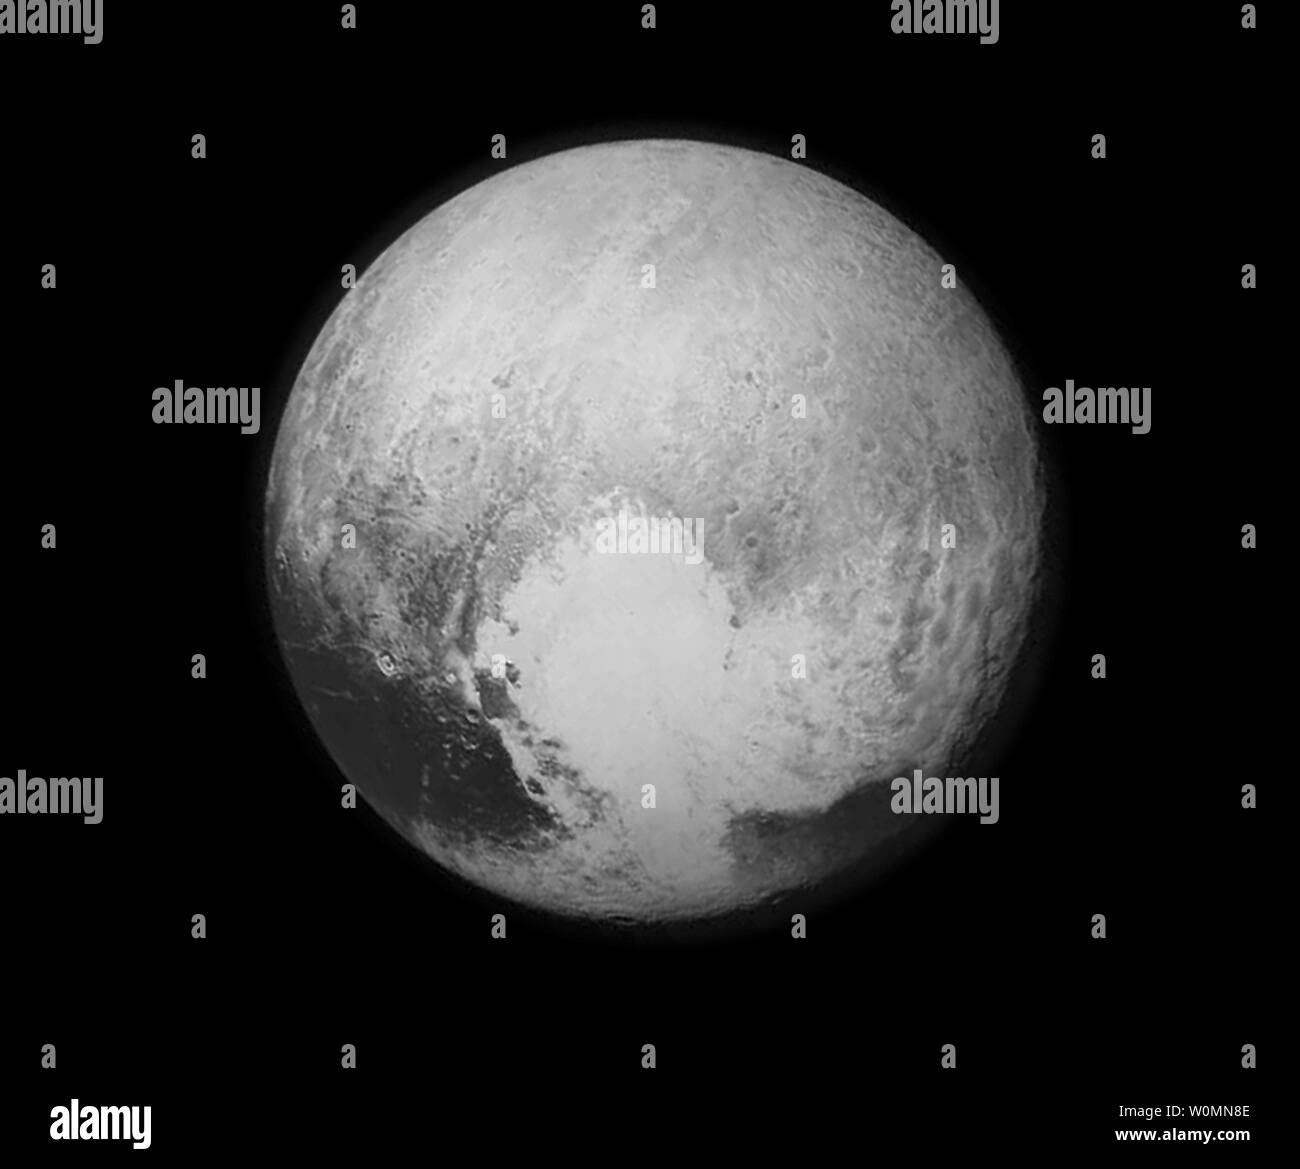 Plutone quasi riempie il fotogramma in questa immagine in bianco e nero dal Long Range Reconnaissance Imager (LORRI) a bordo NASAÕs nuovi orizzonti spaziali, adottate il 13 luglio 2015 quando la navicella è stata 476,000 miglia (768,000 chilometri) dalla superficie. Questo è l'ultimo e più dettagliata immagine inviata a terra prima che il spacecraftÕs approccio più vicino a Plutone il 14 luglio. La navicella spaziale è stato lanciato nove anni fa e ha viaggiato 3 miliardi di miglia. Foto NASA/UPI Foto Stock